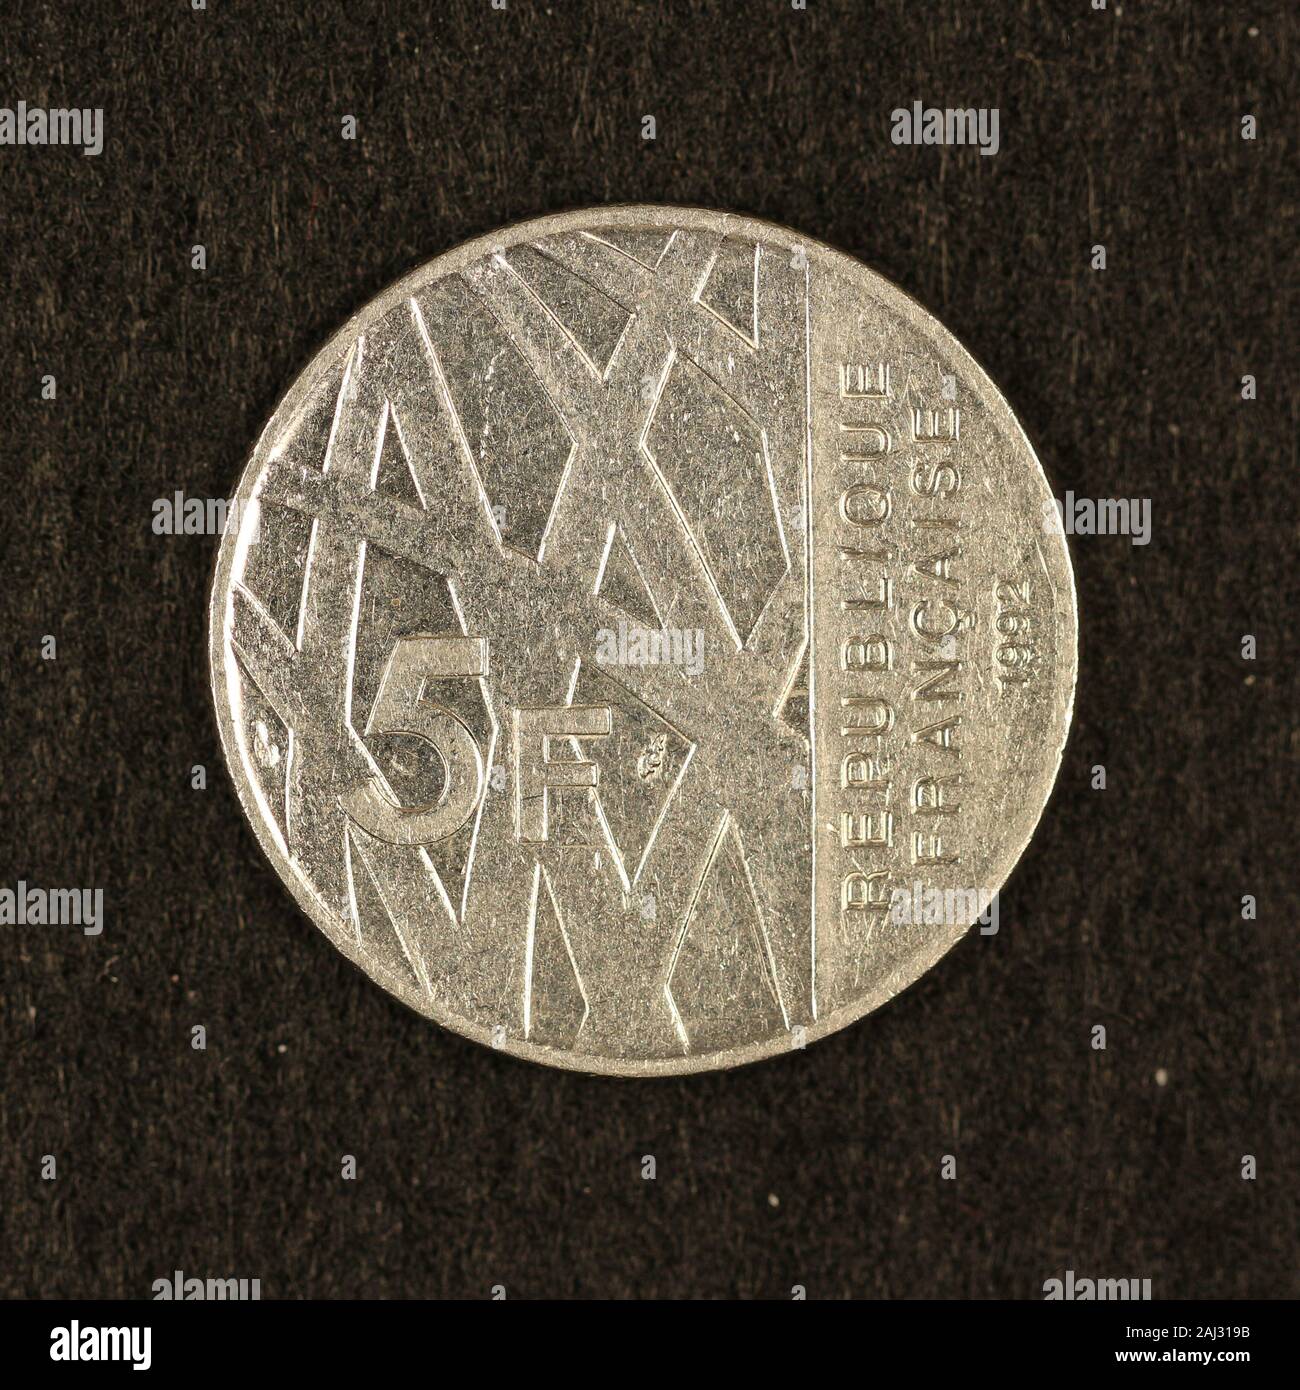 Vorderseite einer ehemaligen 5 franchi Münze Foto Stock